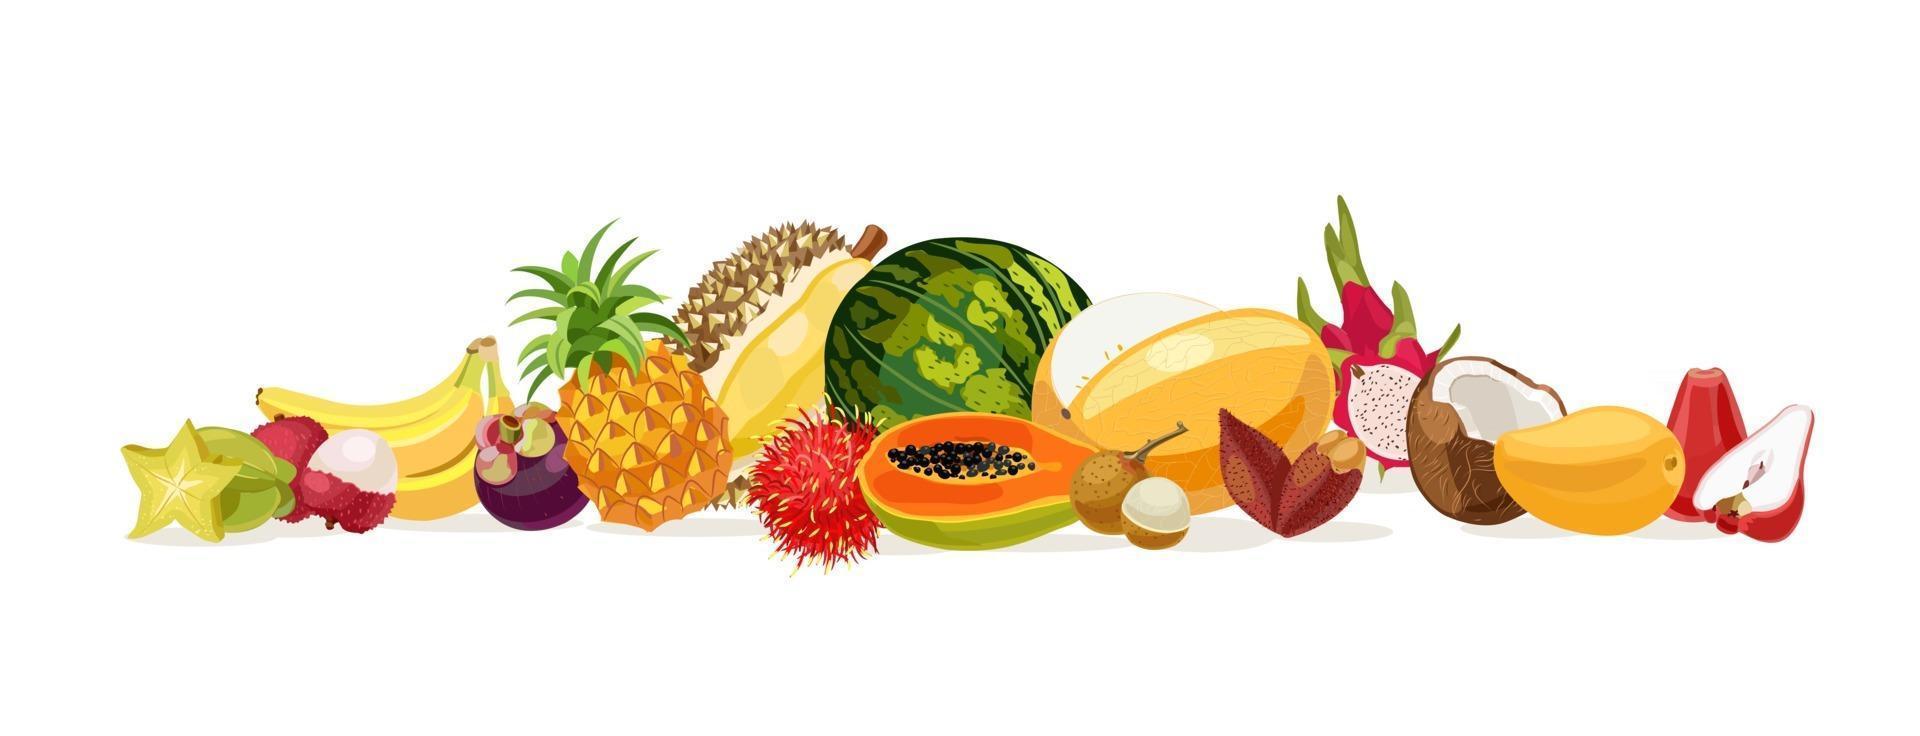 frutas tailandesas. fruta de tailandia. plátano, coco, melón, sandía, carambola, papaya, pomarrosa, durian, lichee, mango, mangostán, frutas del dragón, rambután, piña. ilustración vectorial vector